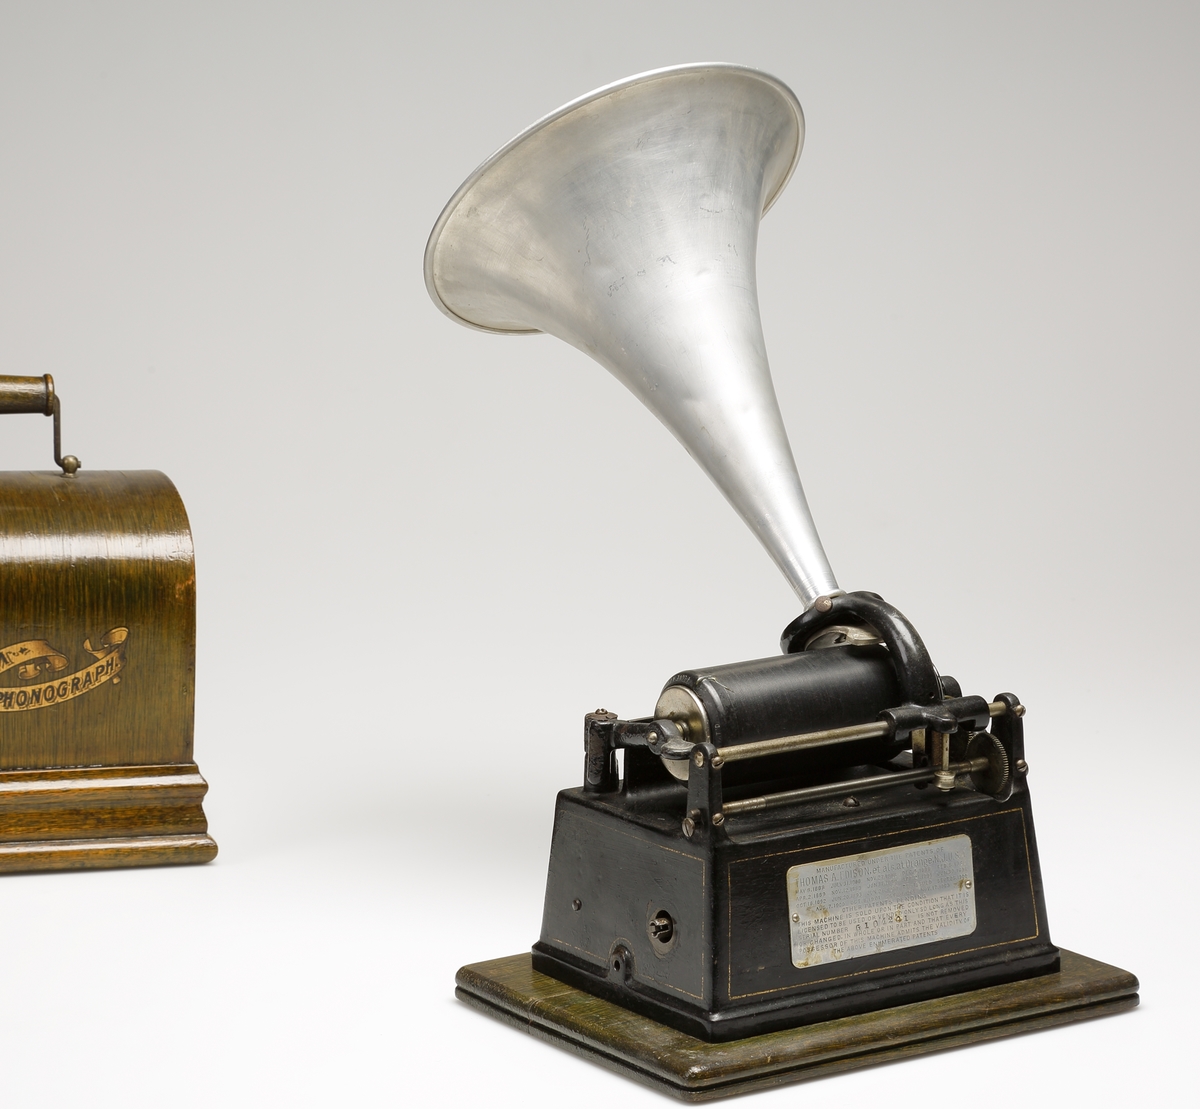 Fonograf, med förvaringslåda. 
Rektangulär, svartlackerad metallåda med musikinstrumentet ovanpå. Dessutom en förnicklad (?) tratt. Vrides upp med nyckel på kortsidan. 
Förvaringslåda av fernissat trä med handtag och påmålad text: "Edison, GEM, Phonograph".